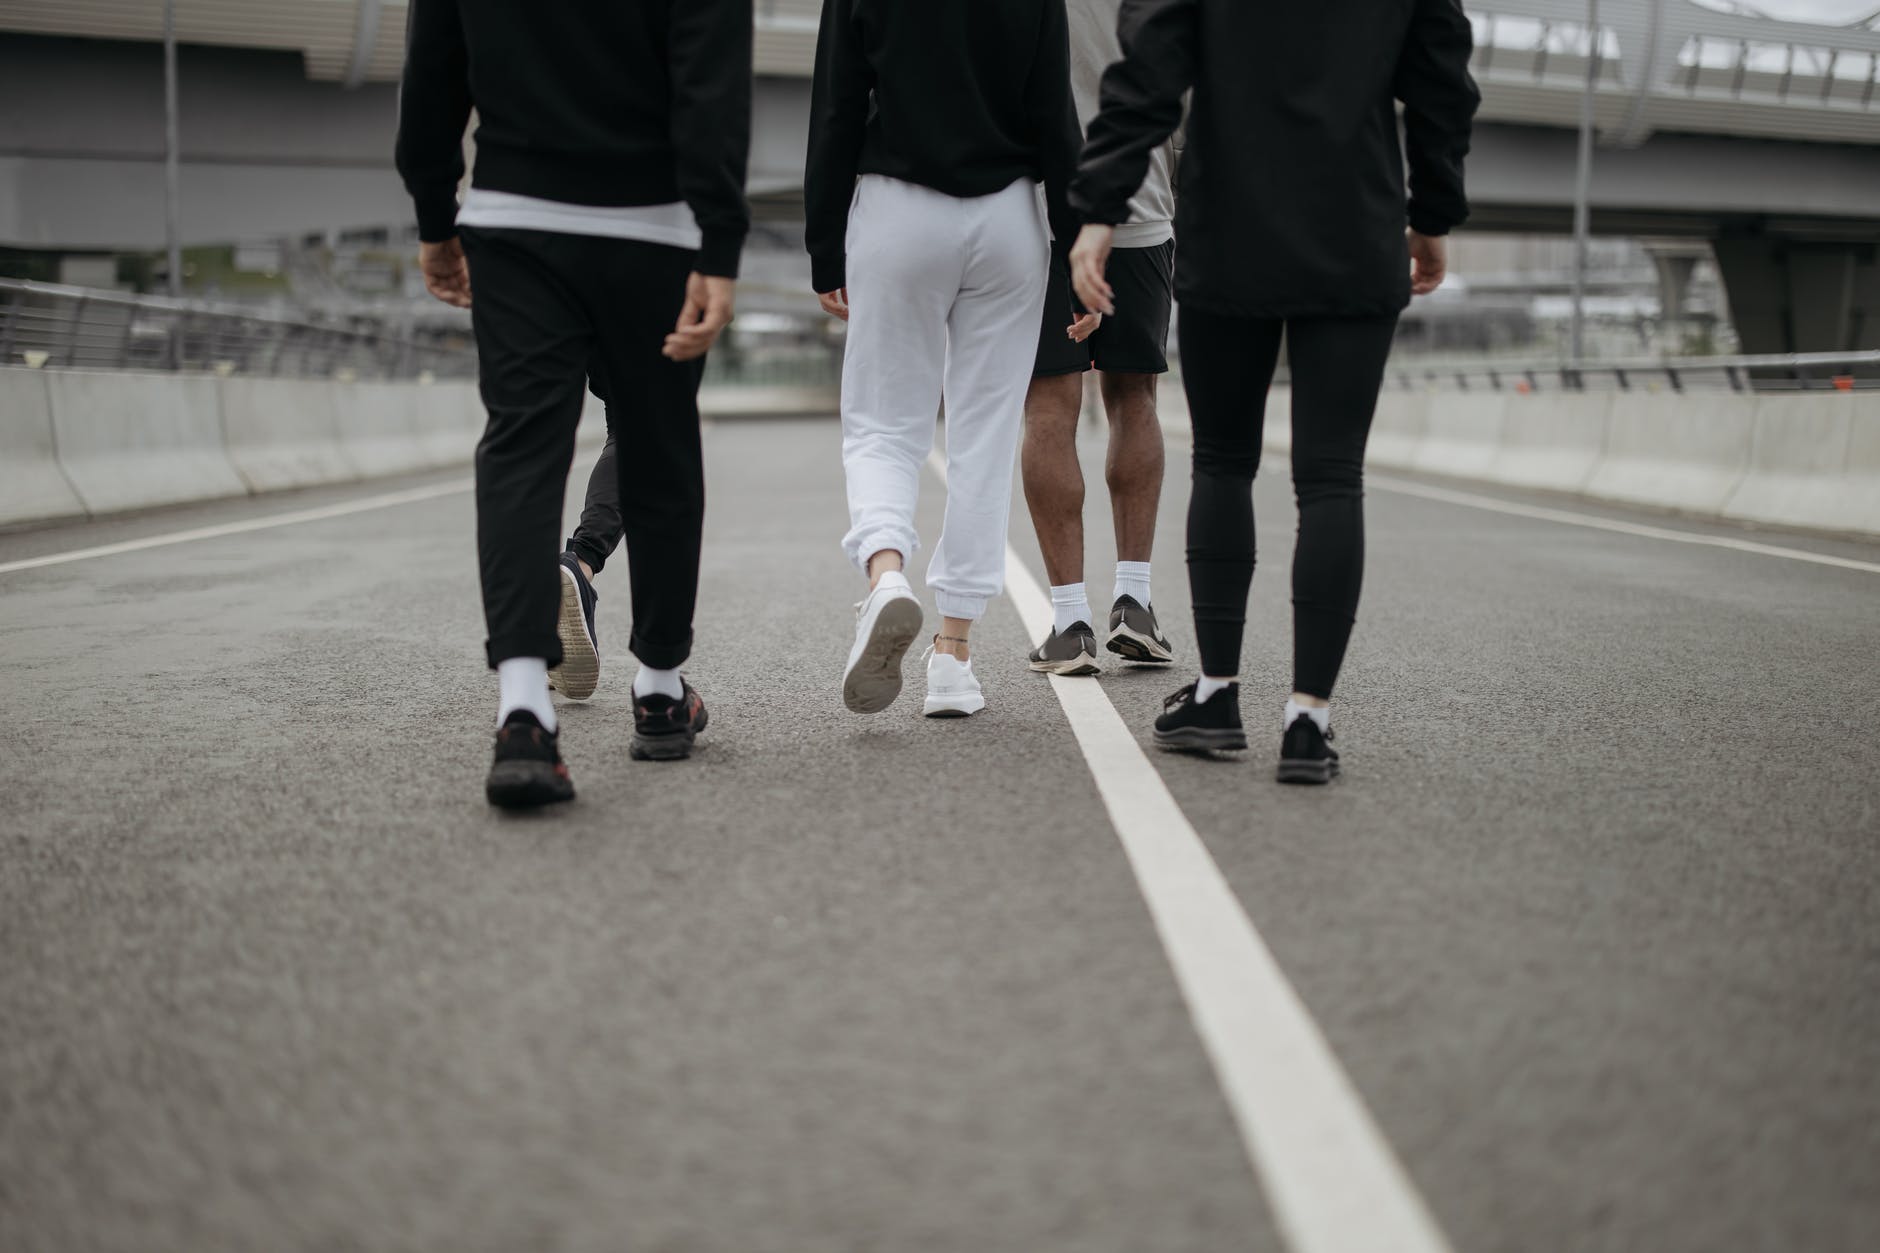 people in their activewear walking on an asphalt road